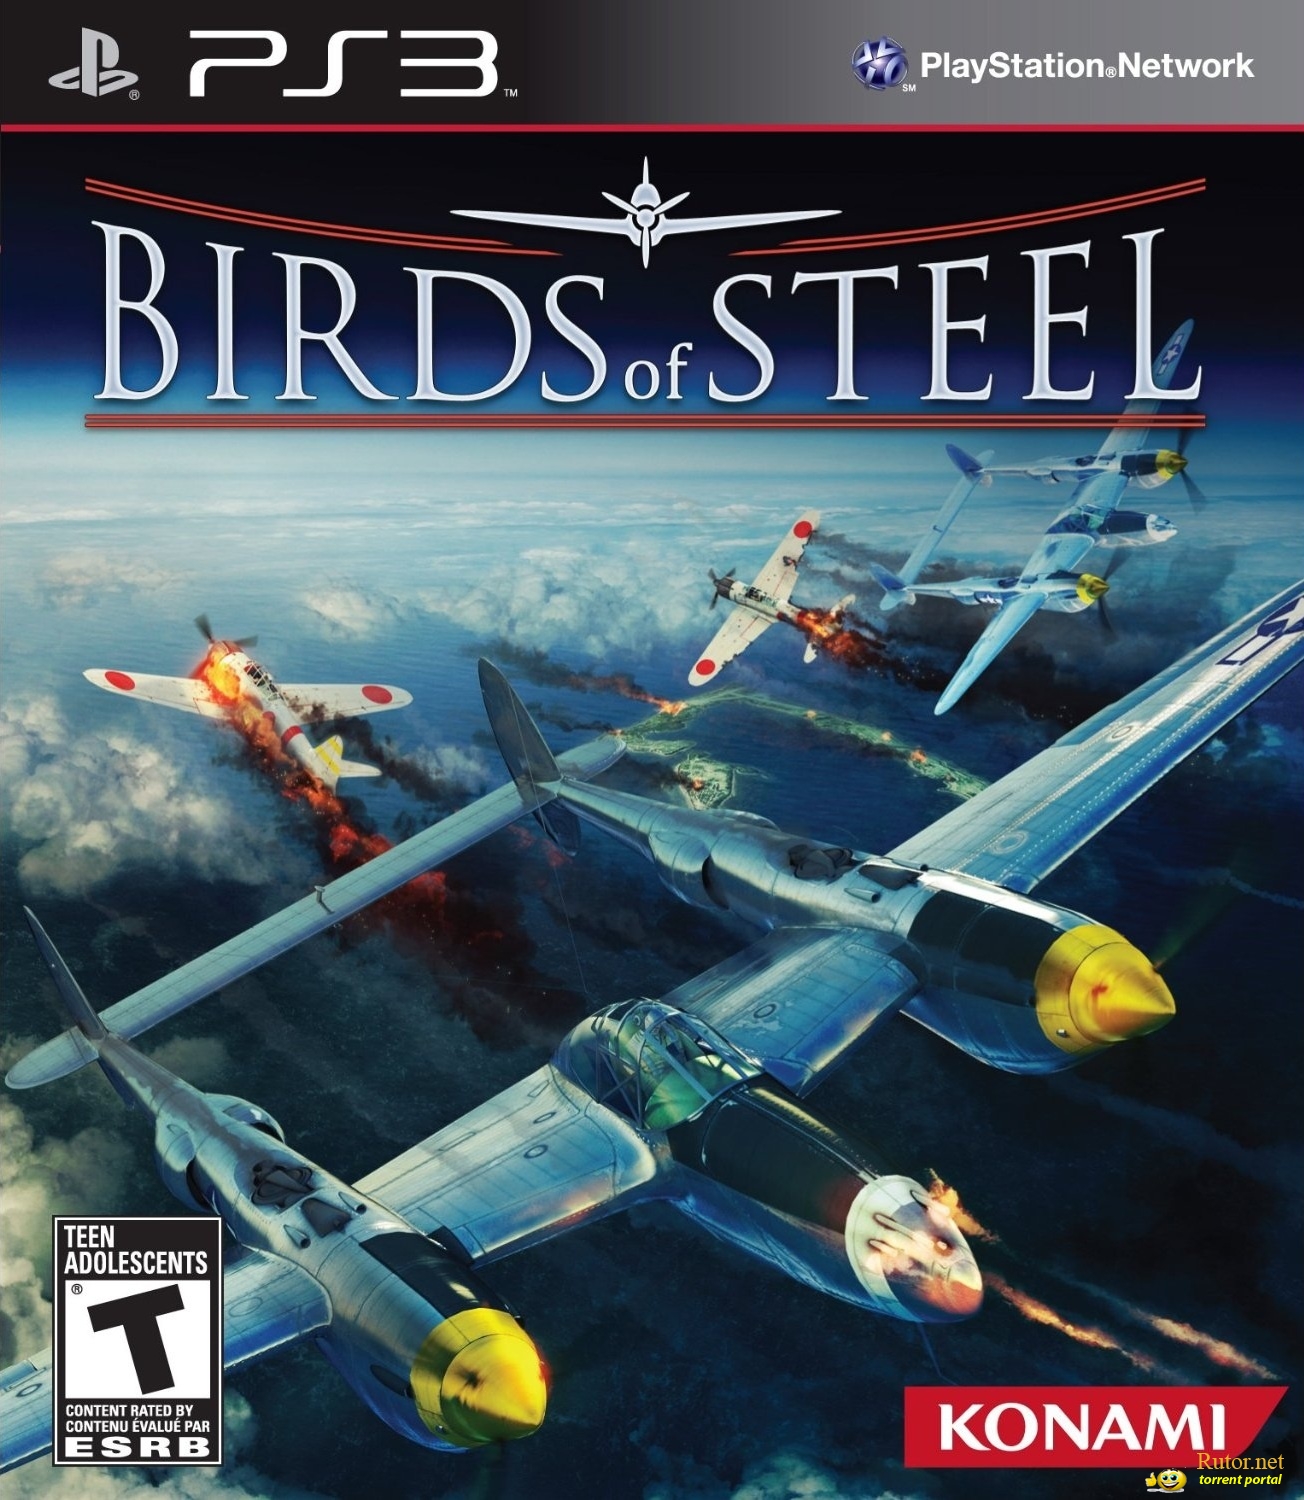 download free birds of steel ps3